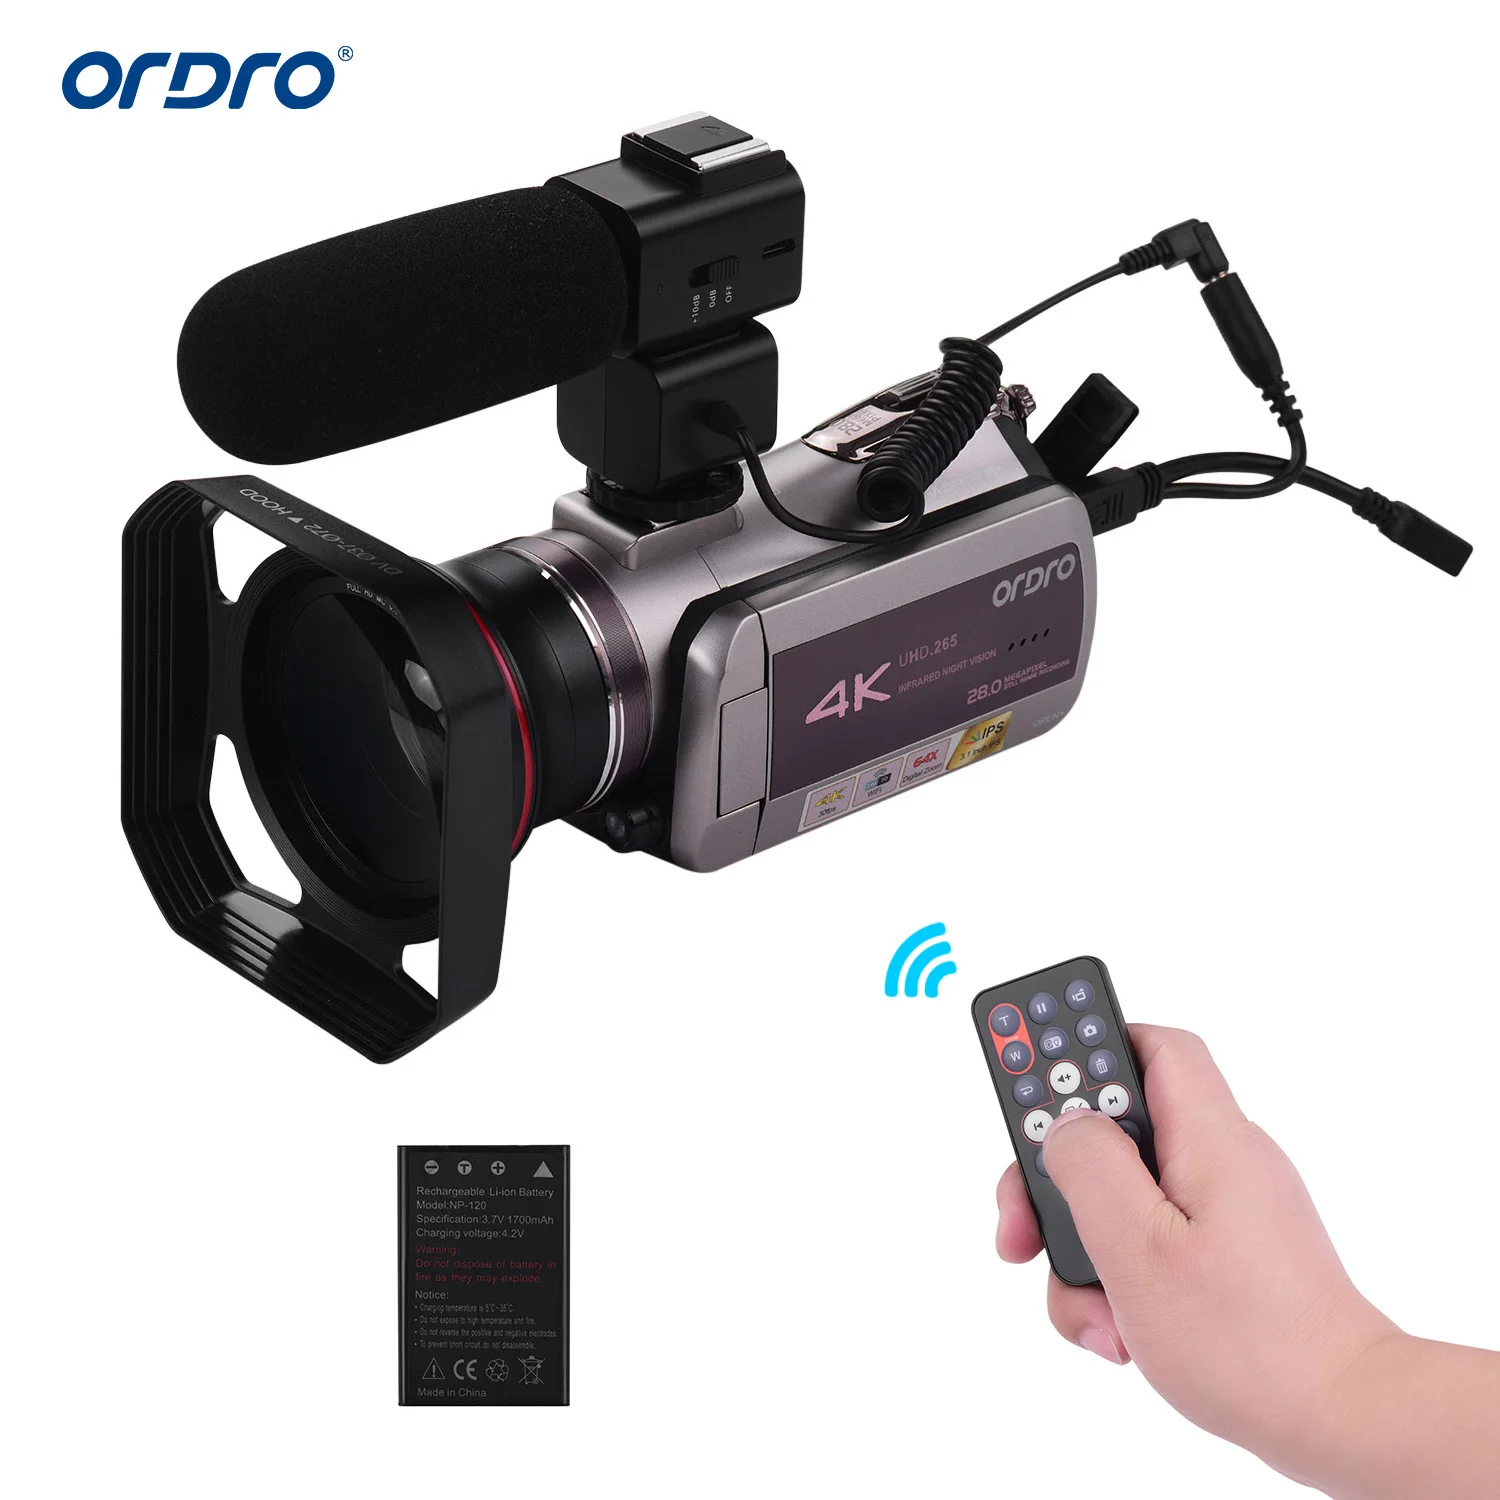 

Оригинальная Портативная Цифровая видеокамера ORDRO, 4K UHD, 30 кадров в секунду, Wi-Fi, видеокамера с 3,1 дюймовым IPS сенсорным экраном, цифровой виде...